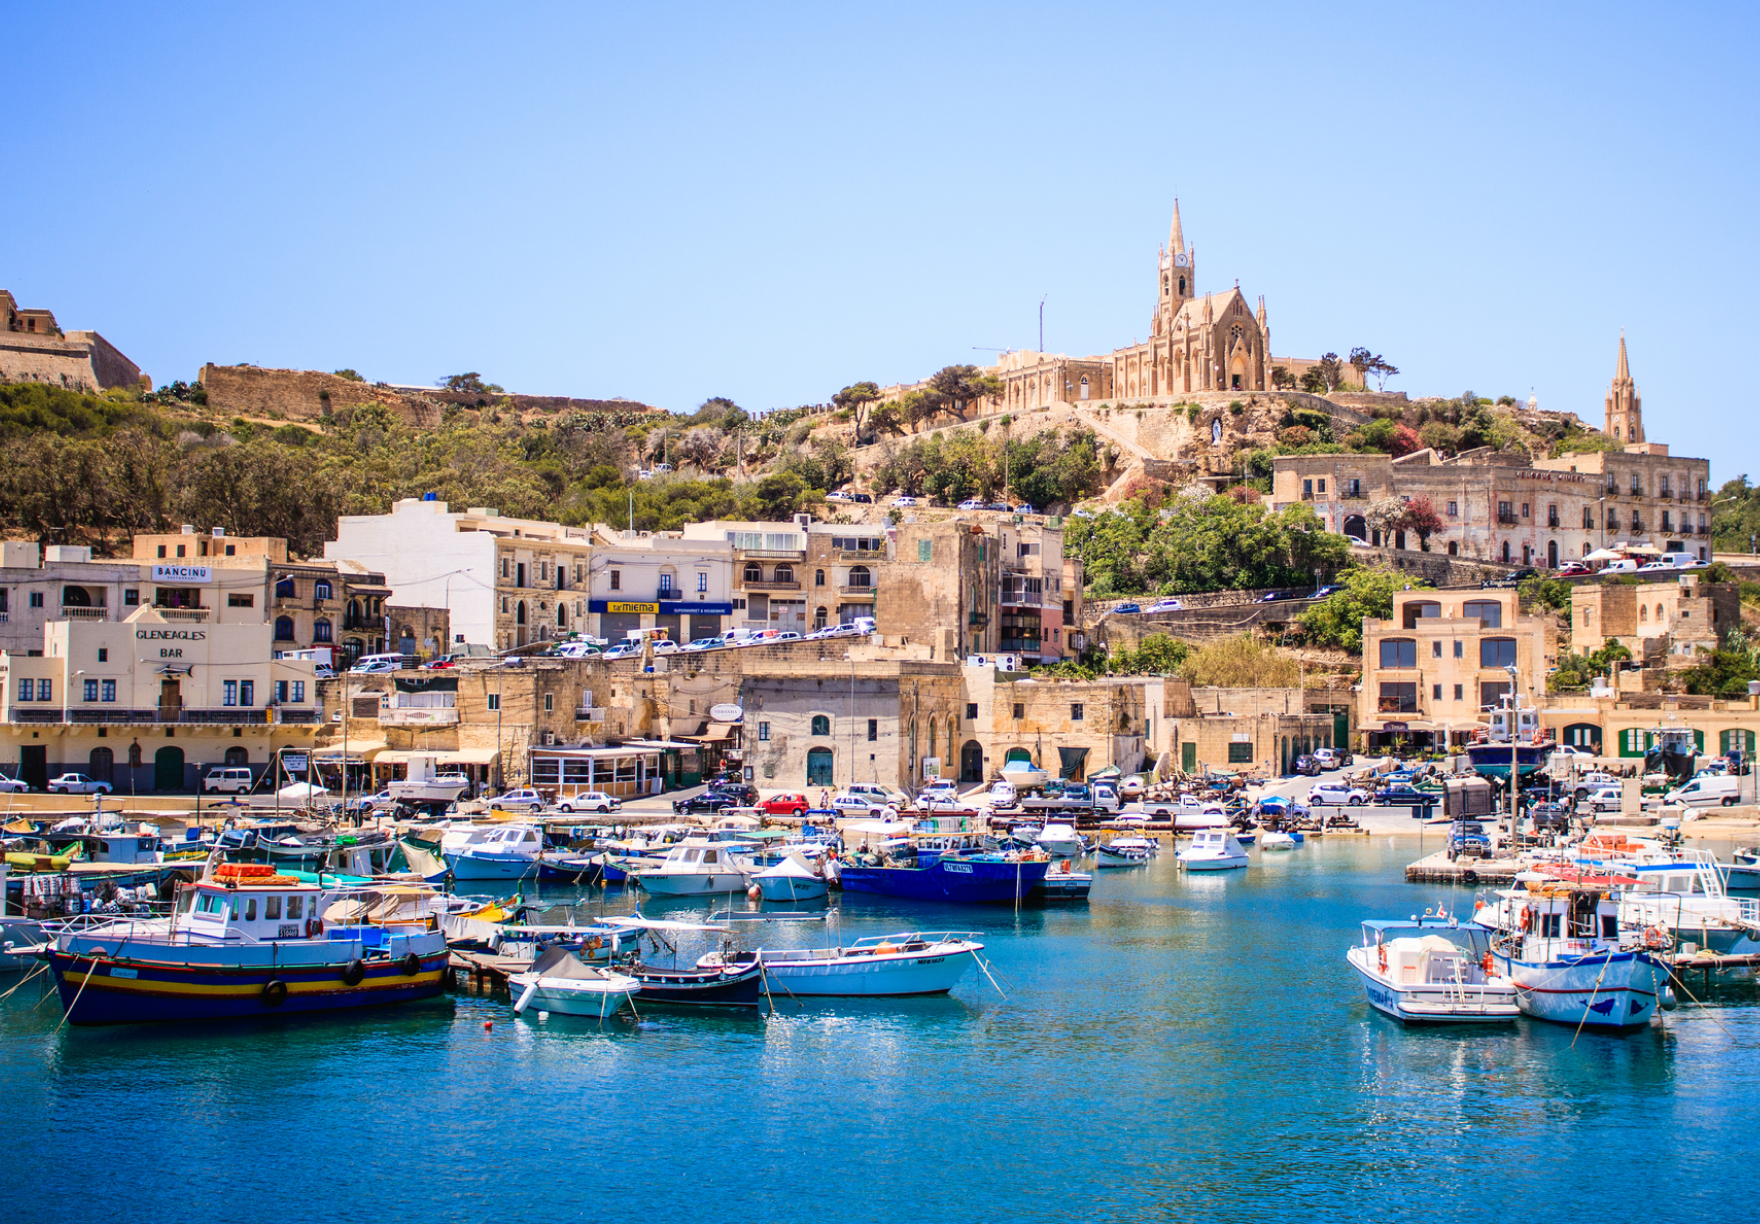 visit visa to malta